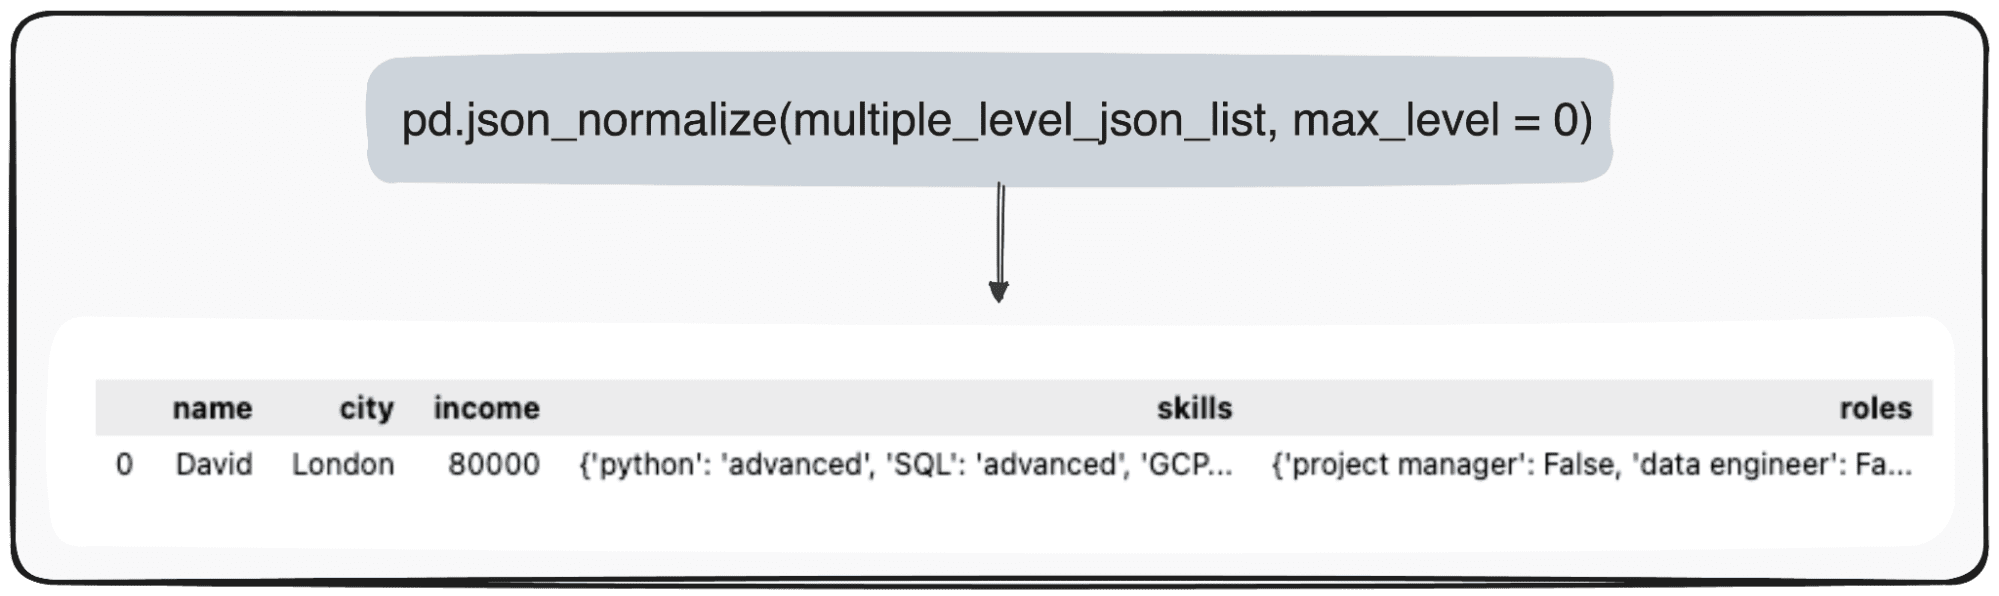 Conversione di JSON in DataFrames Panda: analizzarli nel modo giusto